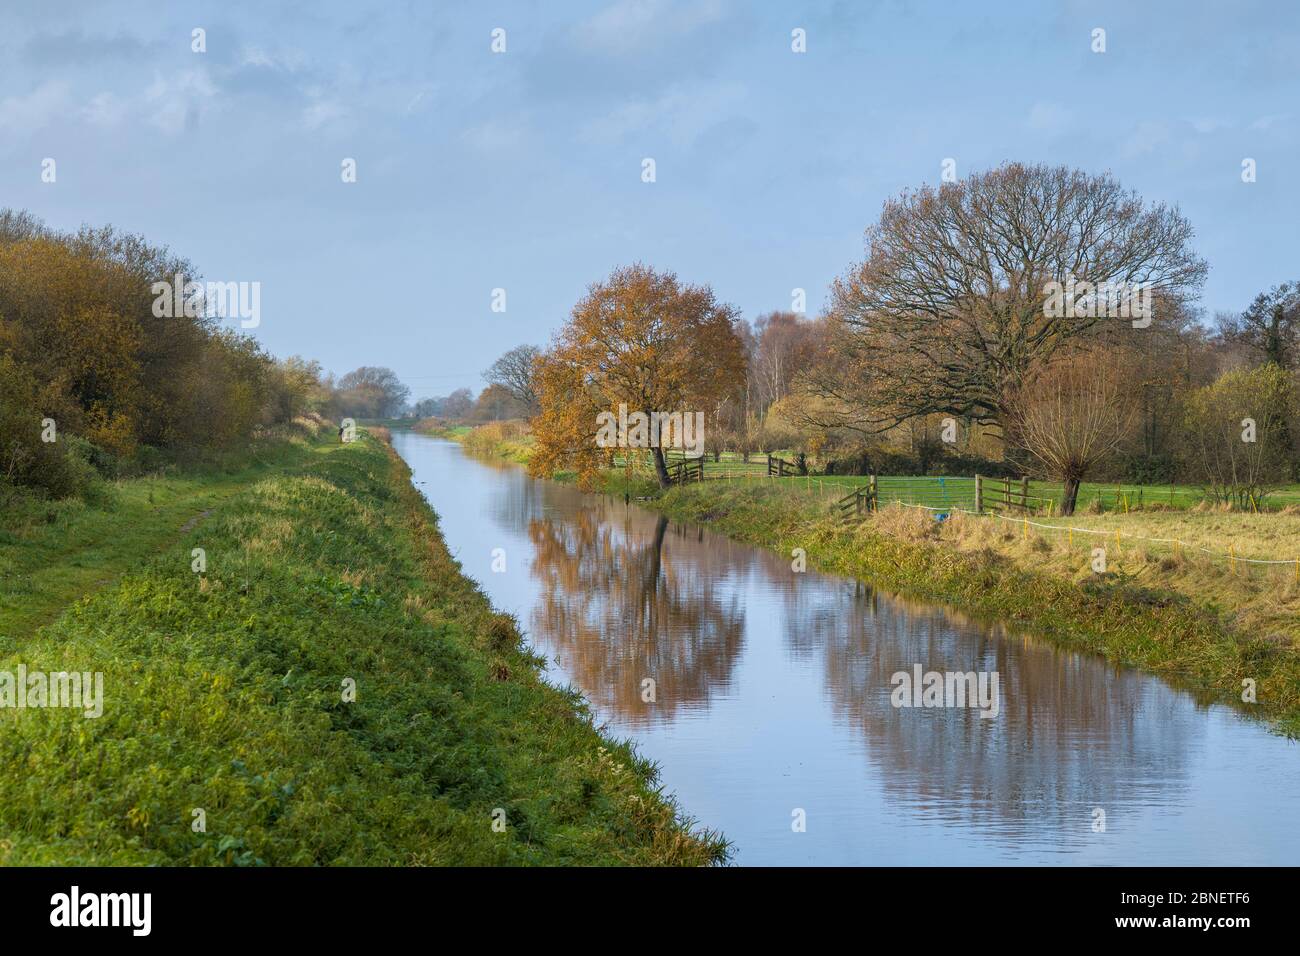 Tranquila escena a lo largo del canal de agua en Avalon Marshes en los niveles de Somerset, Reino Unido Foto de stock